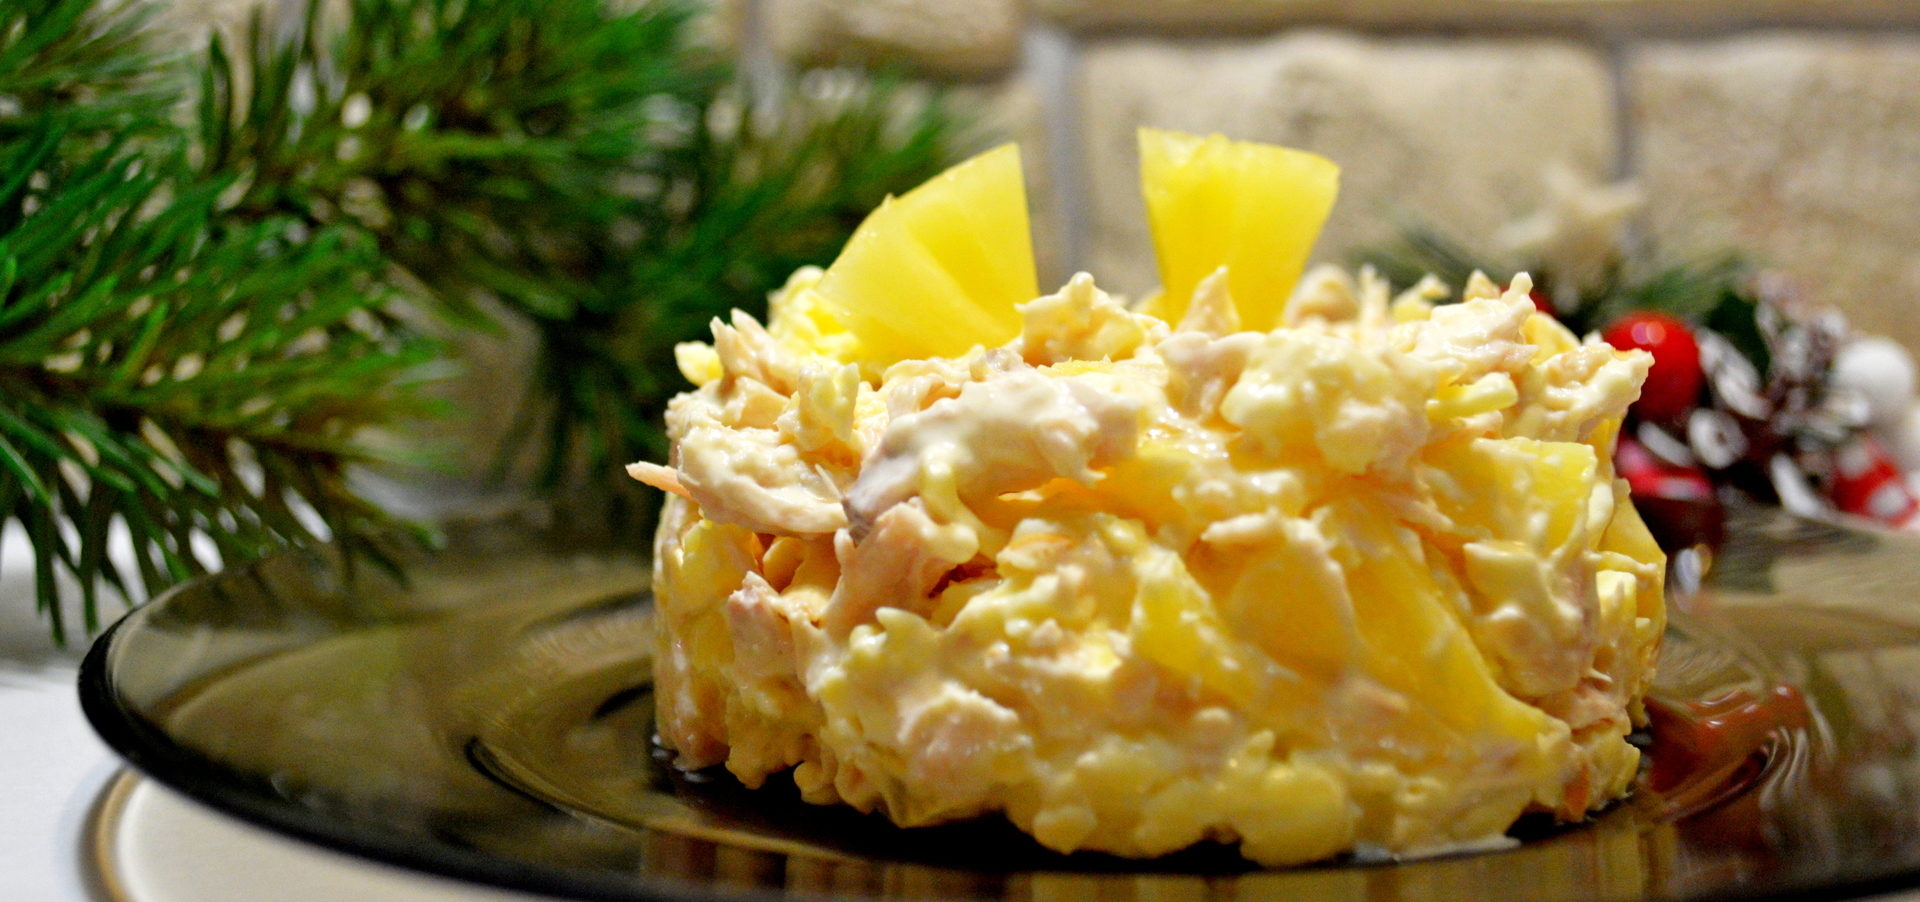 Пошаговый рецепт салат курица с ананасами рецепт с фото классический